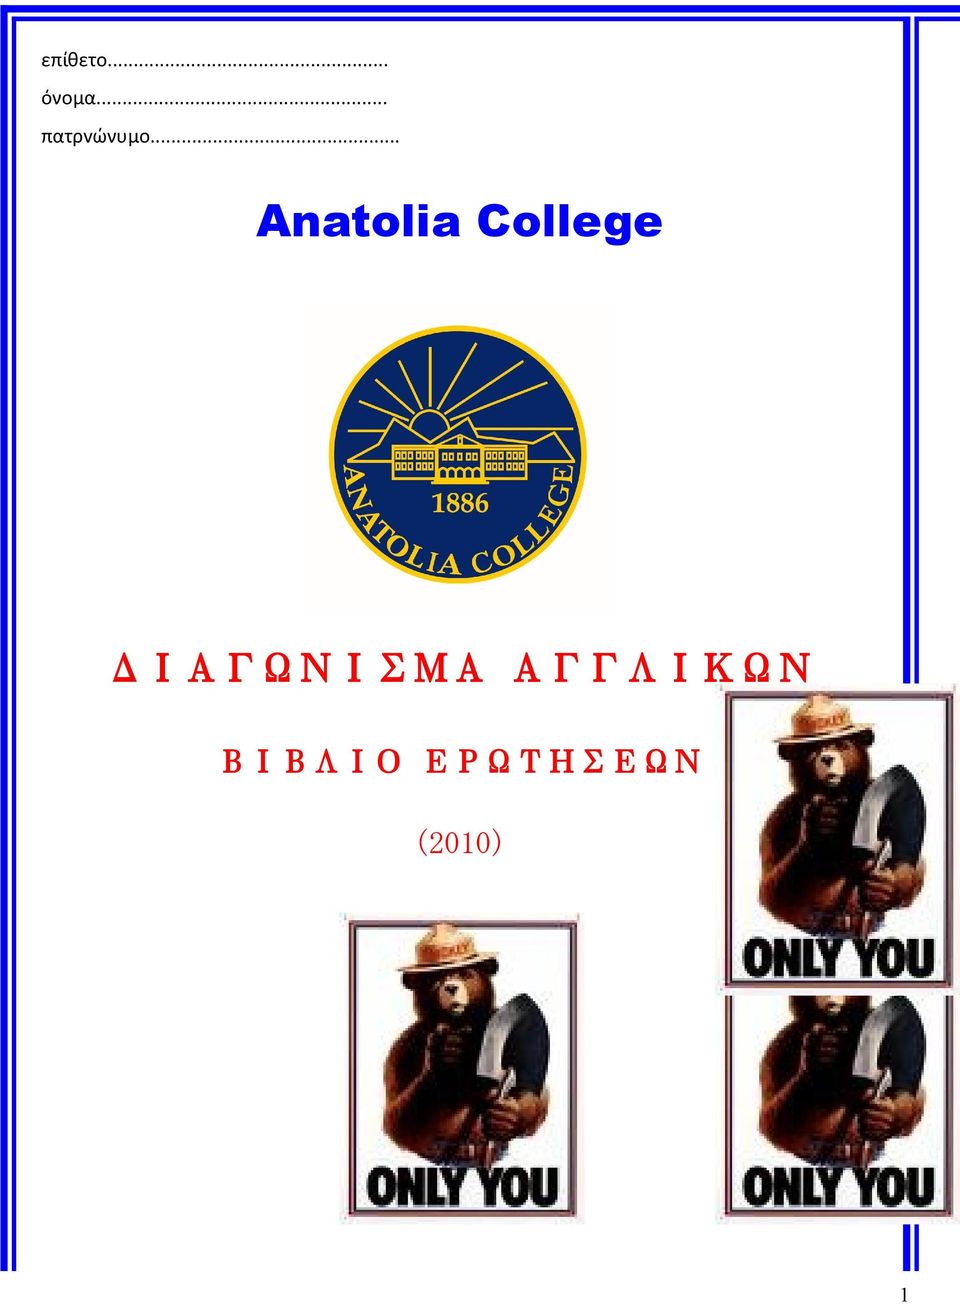 .. Anatolia College